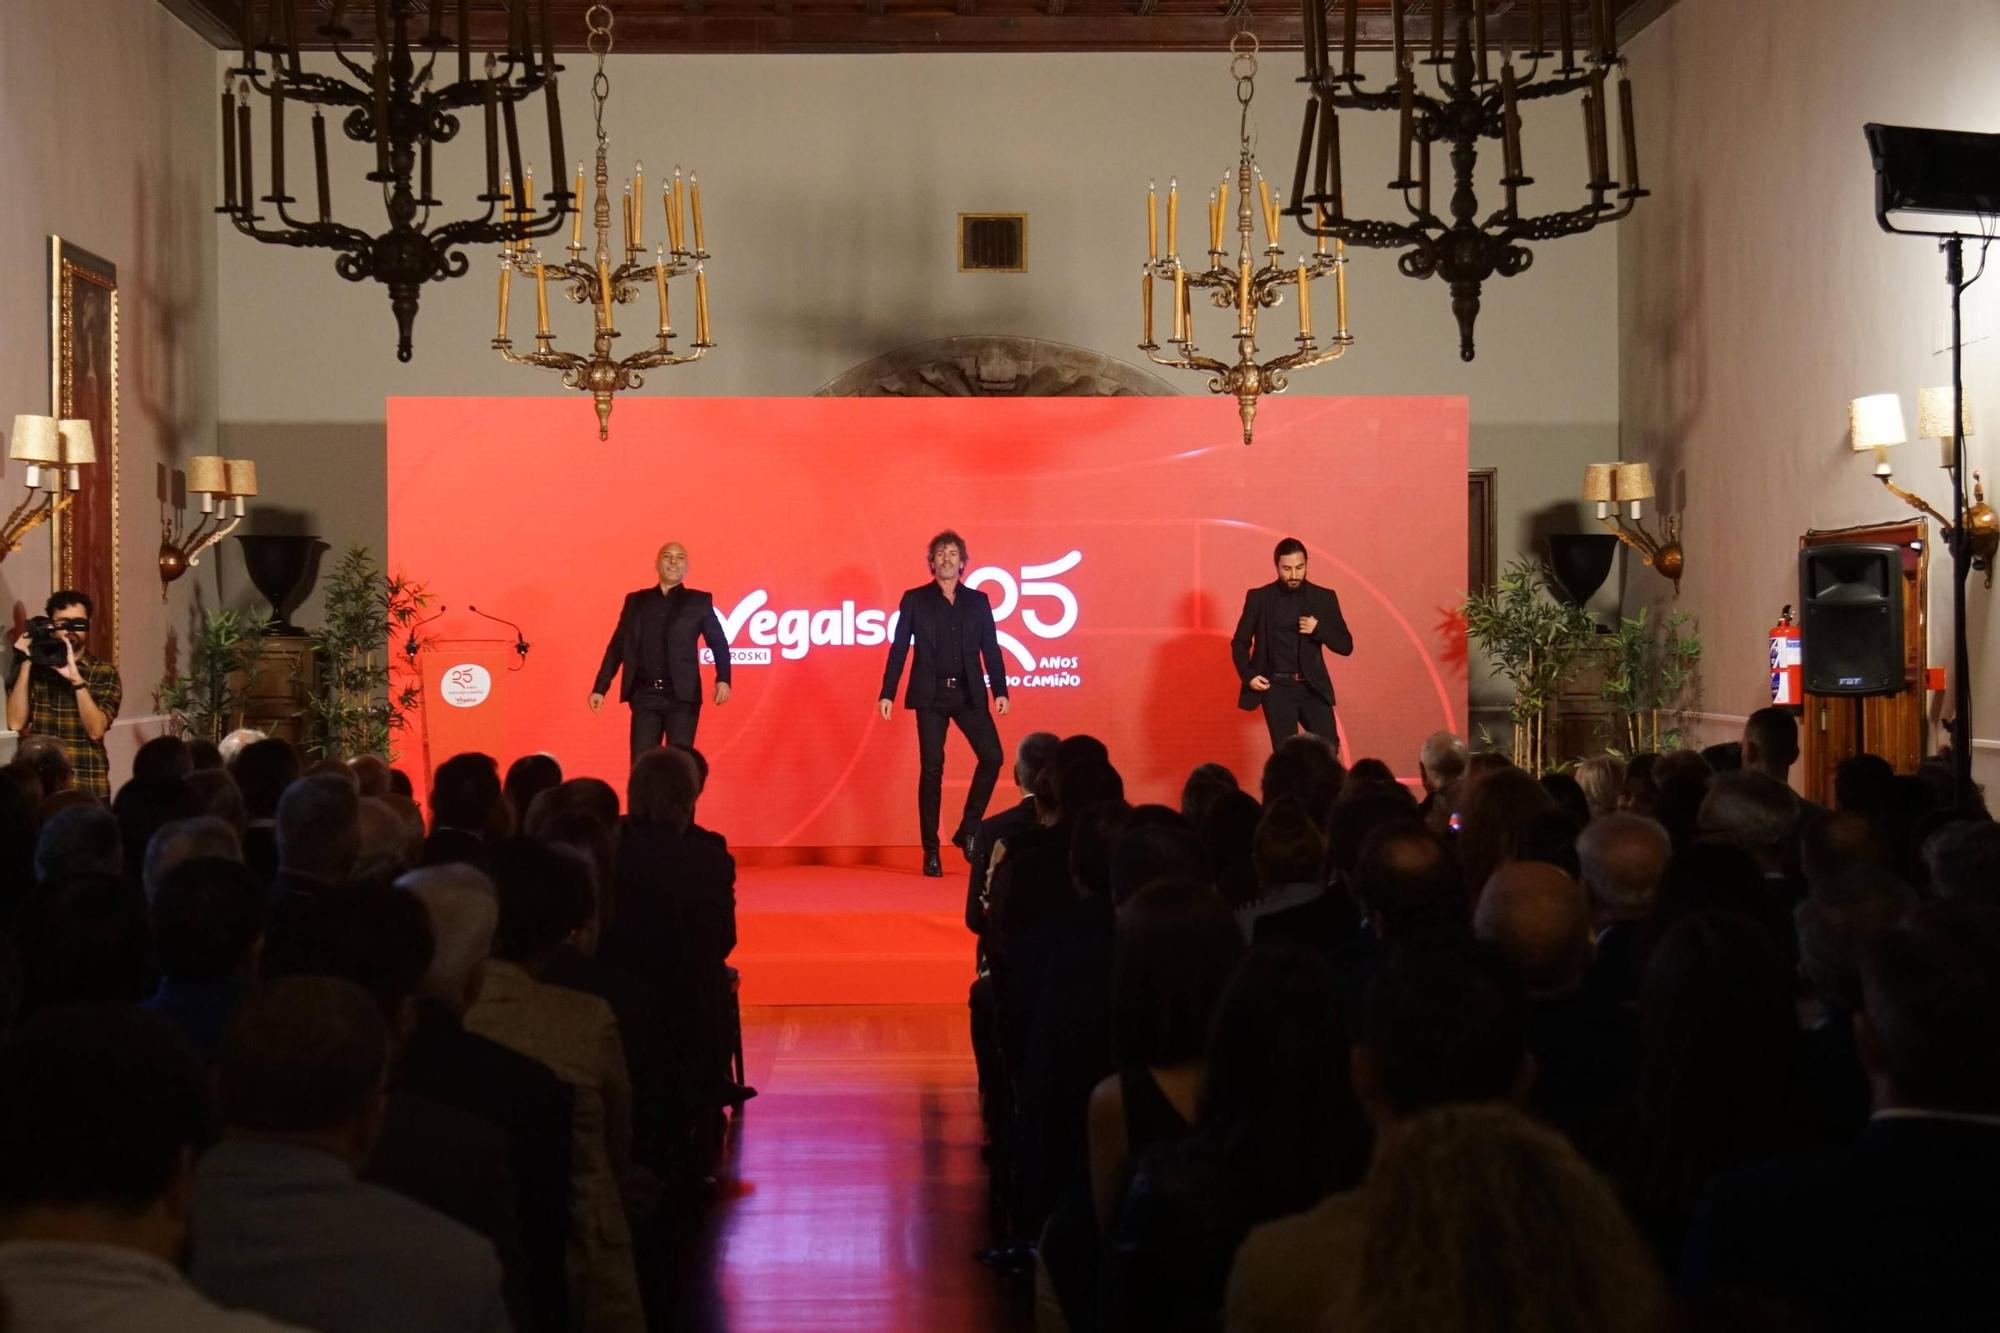 Vegalsa-Eroski celebra los 25 años de una alianza "clave para Galicia"